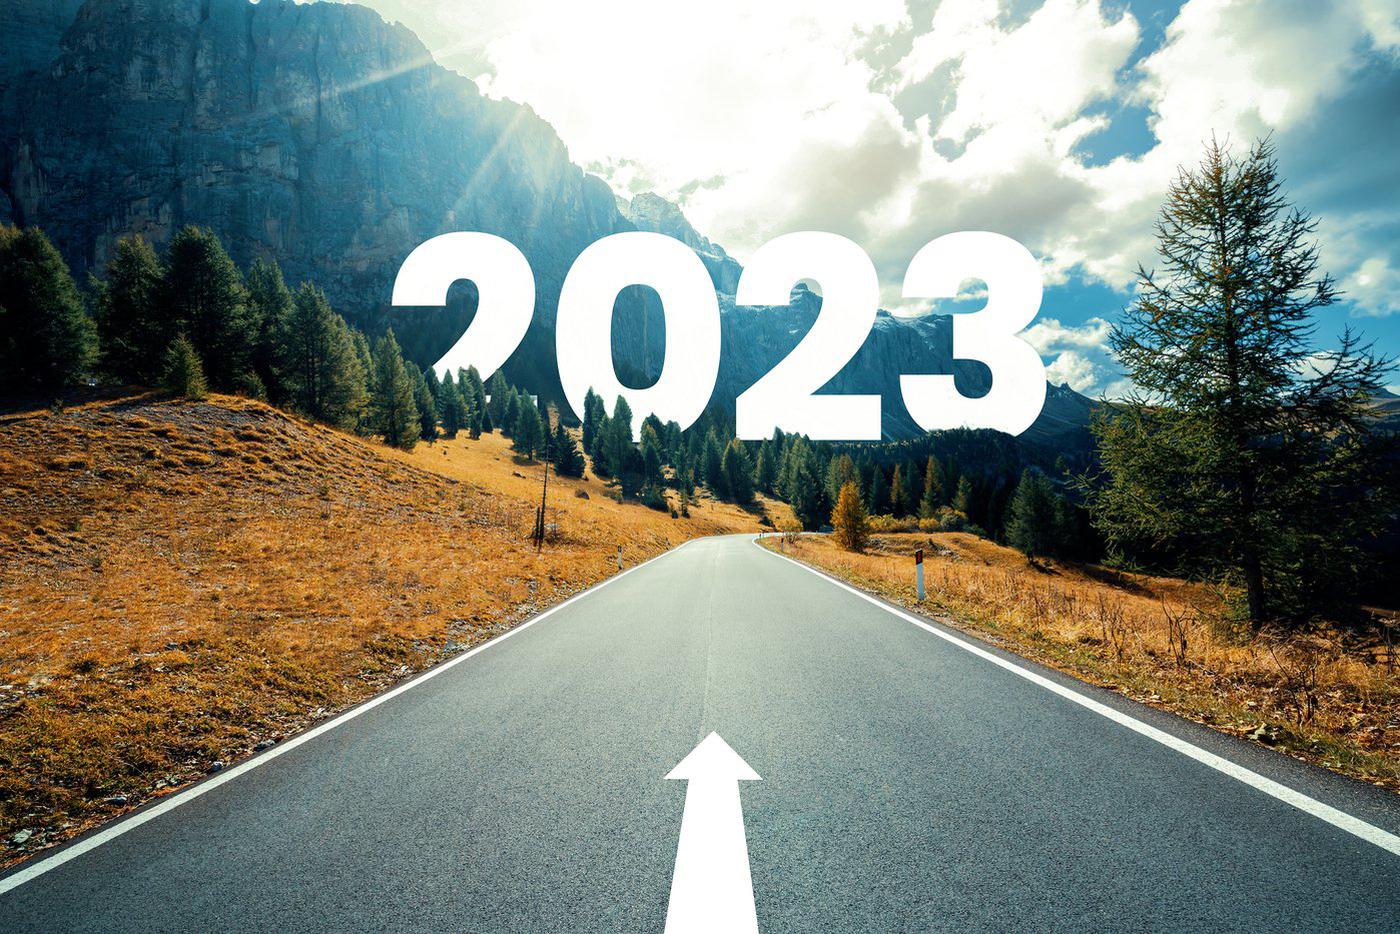 Рекомендации нумеролога помогут вам реализоваться и достичь успеха в 2023 году